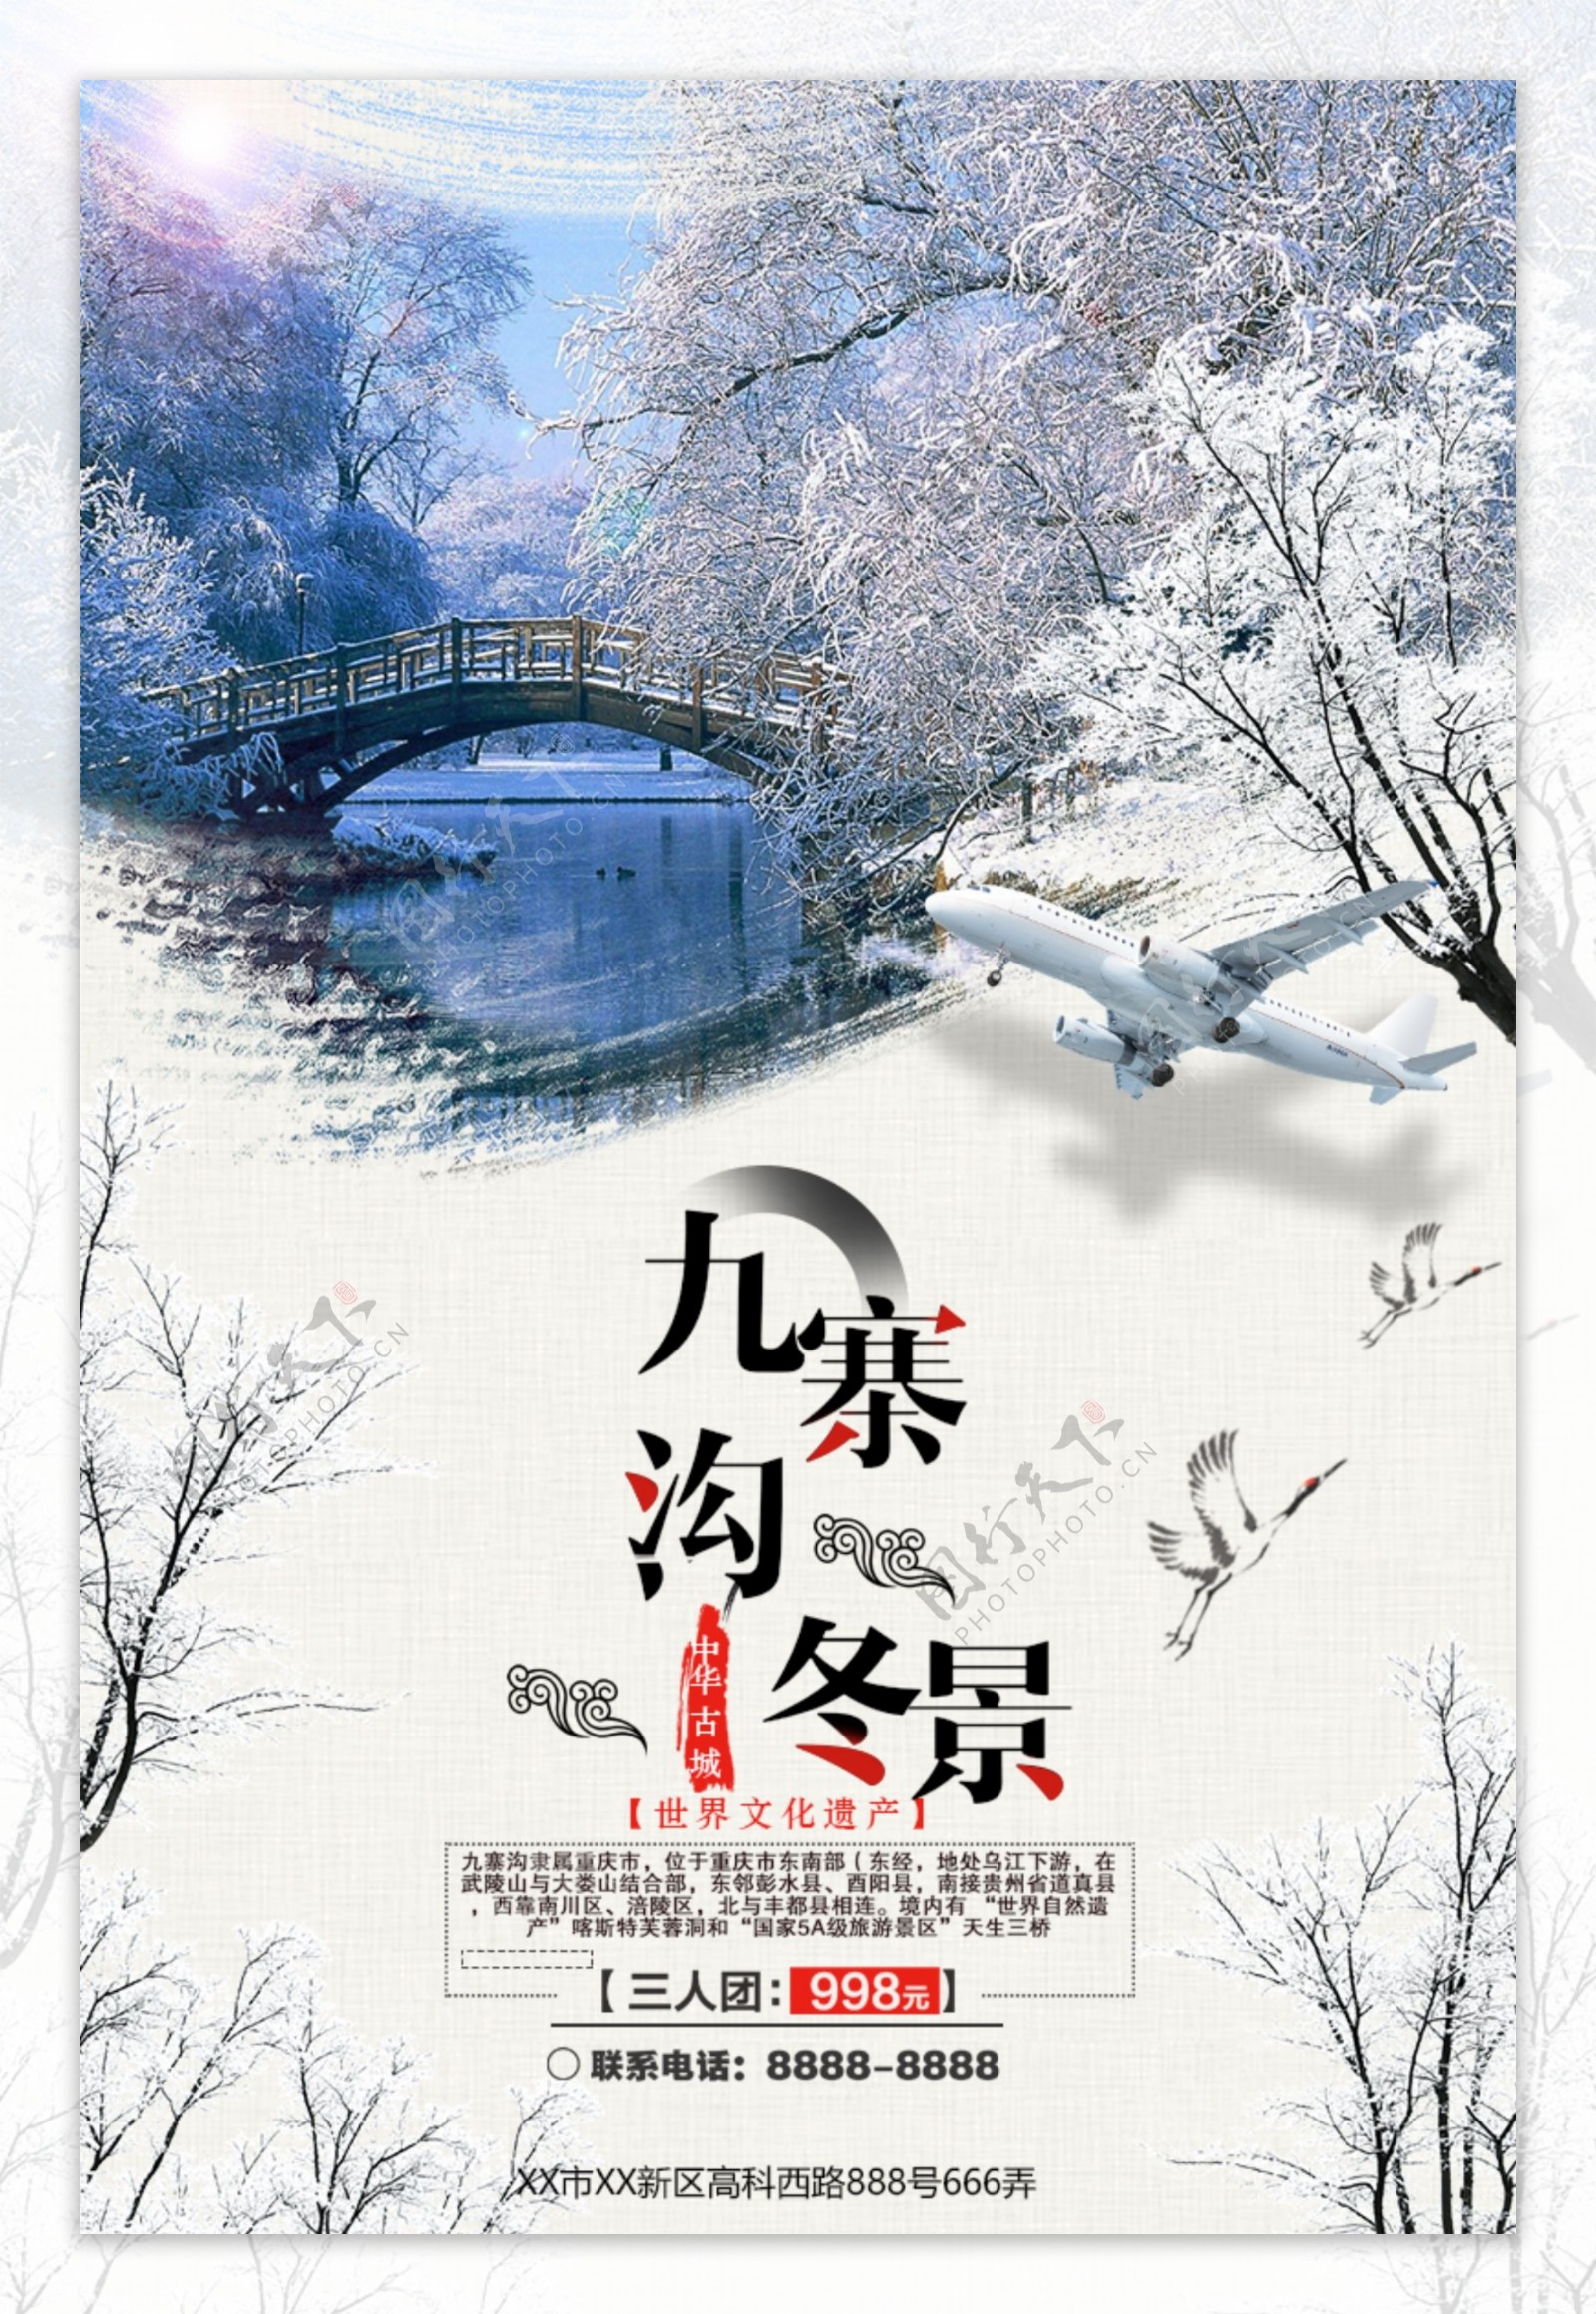 中国风大气九寨沟冬景旅游海报设计